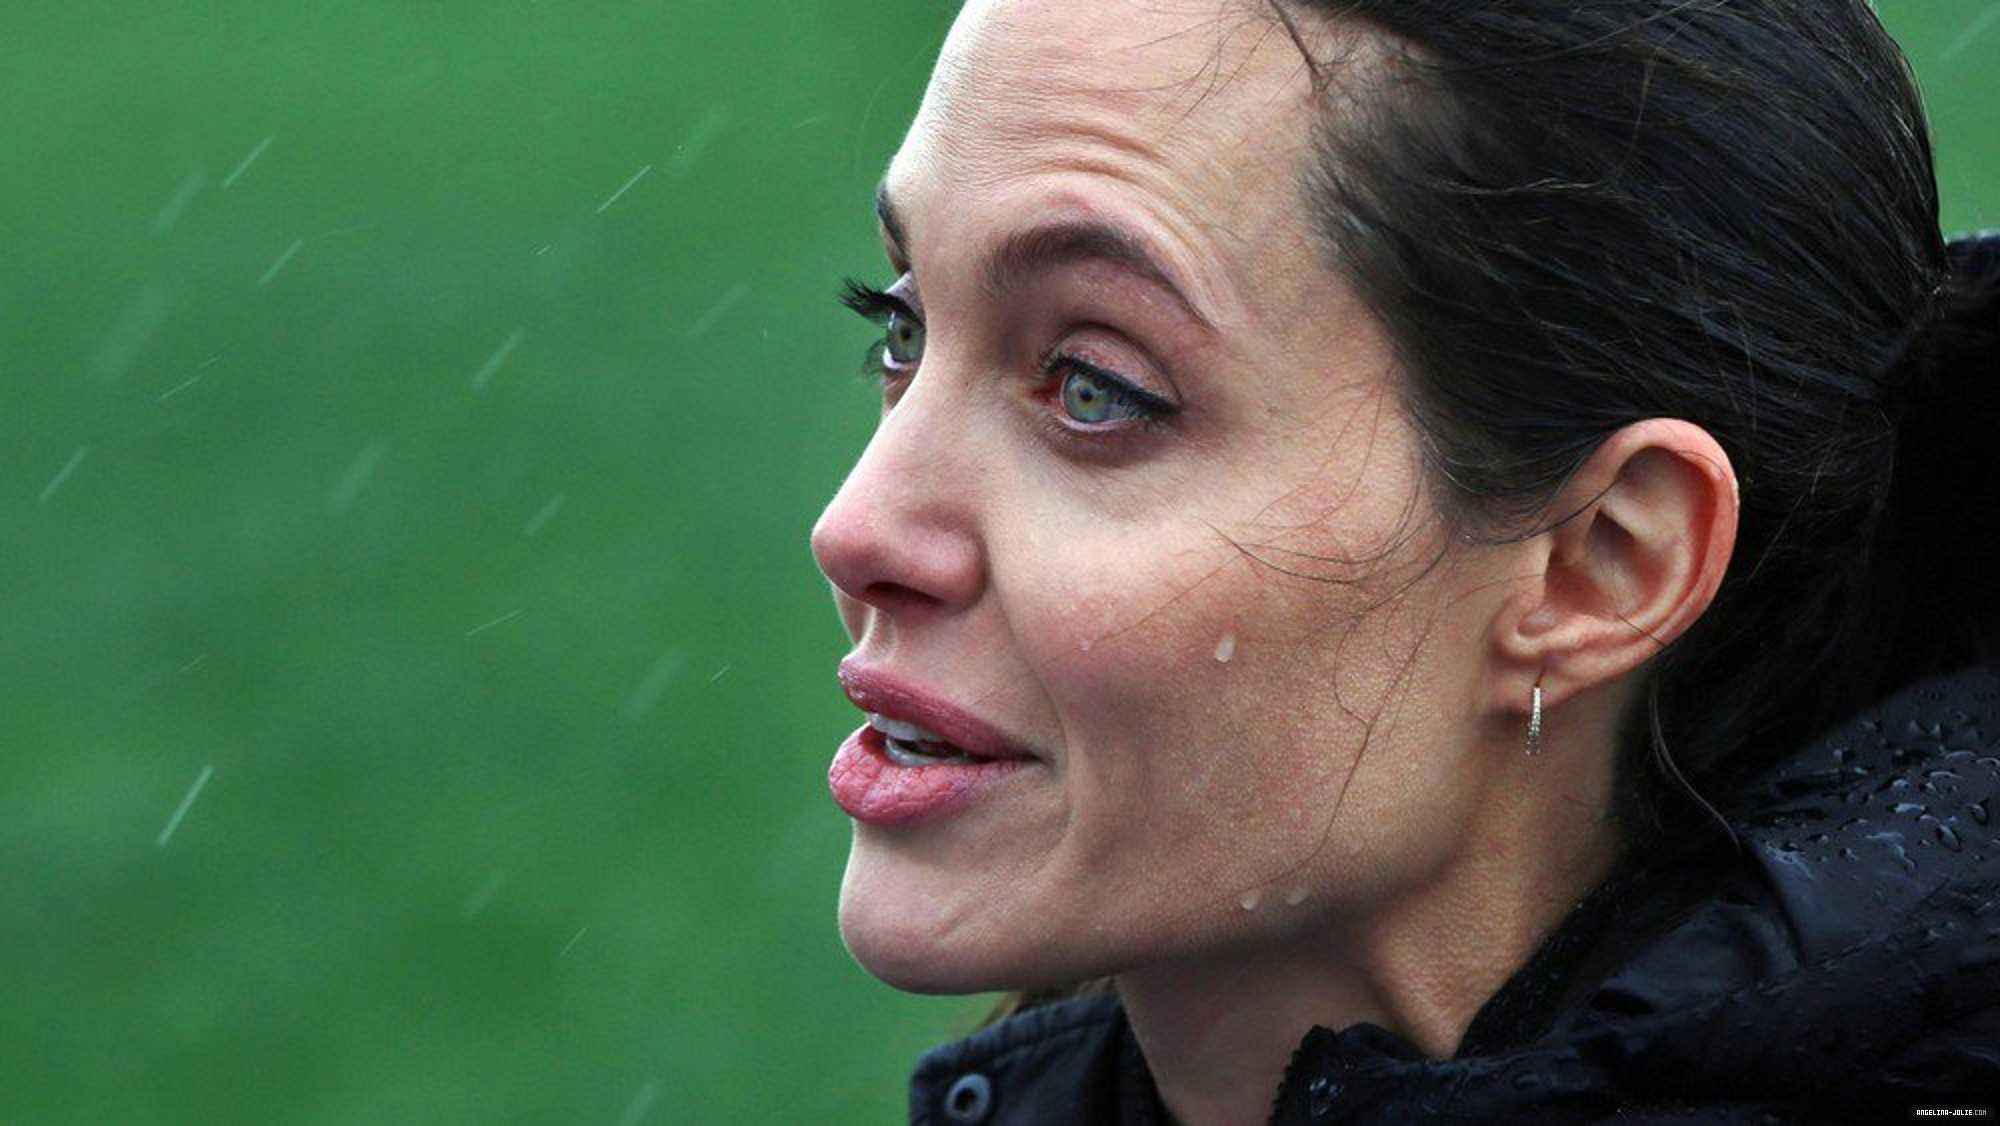 Angelina Jolie Beaten